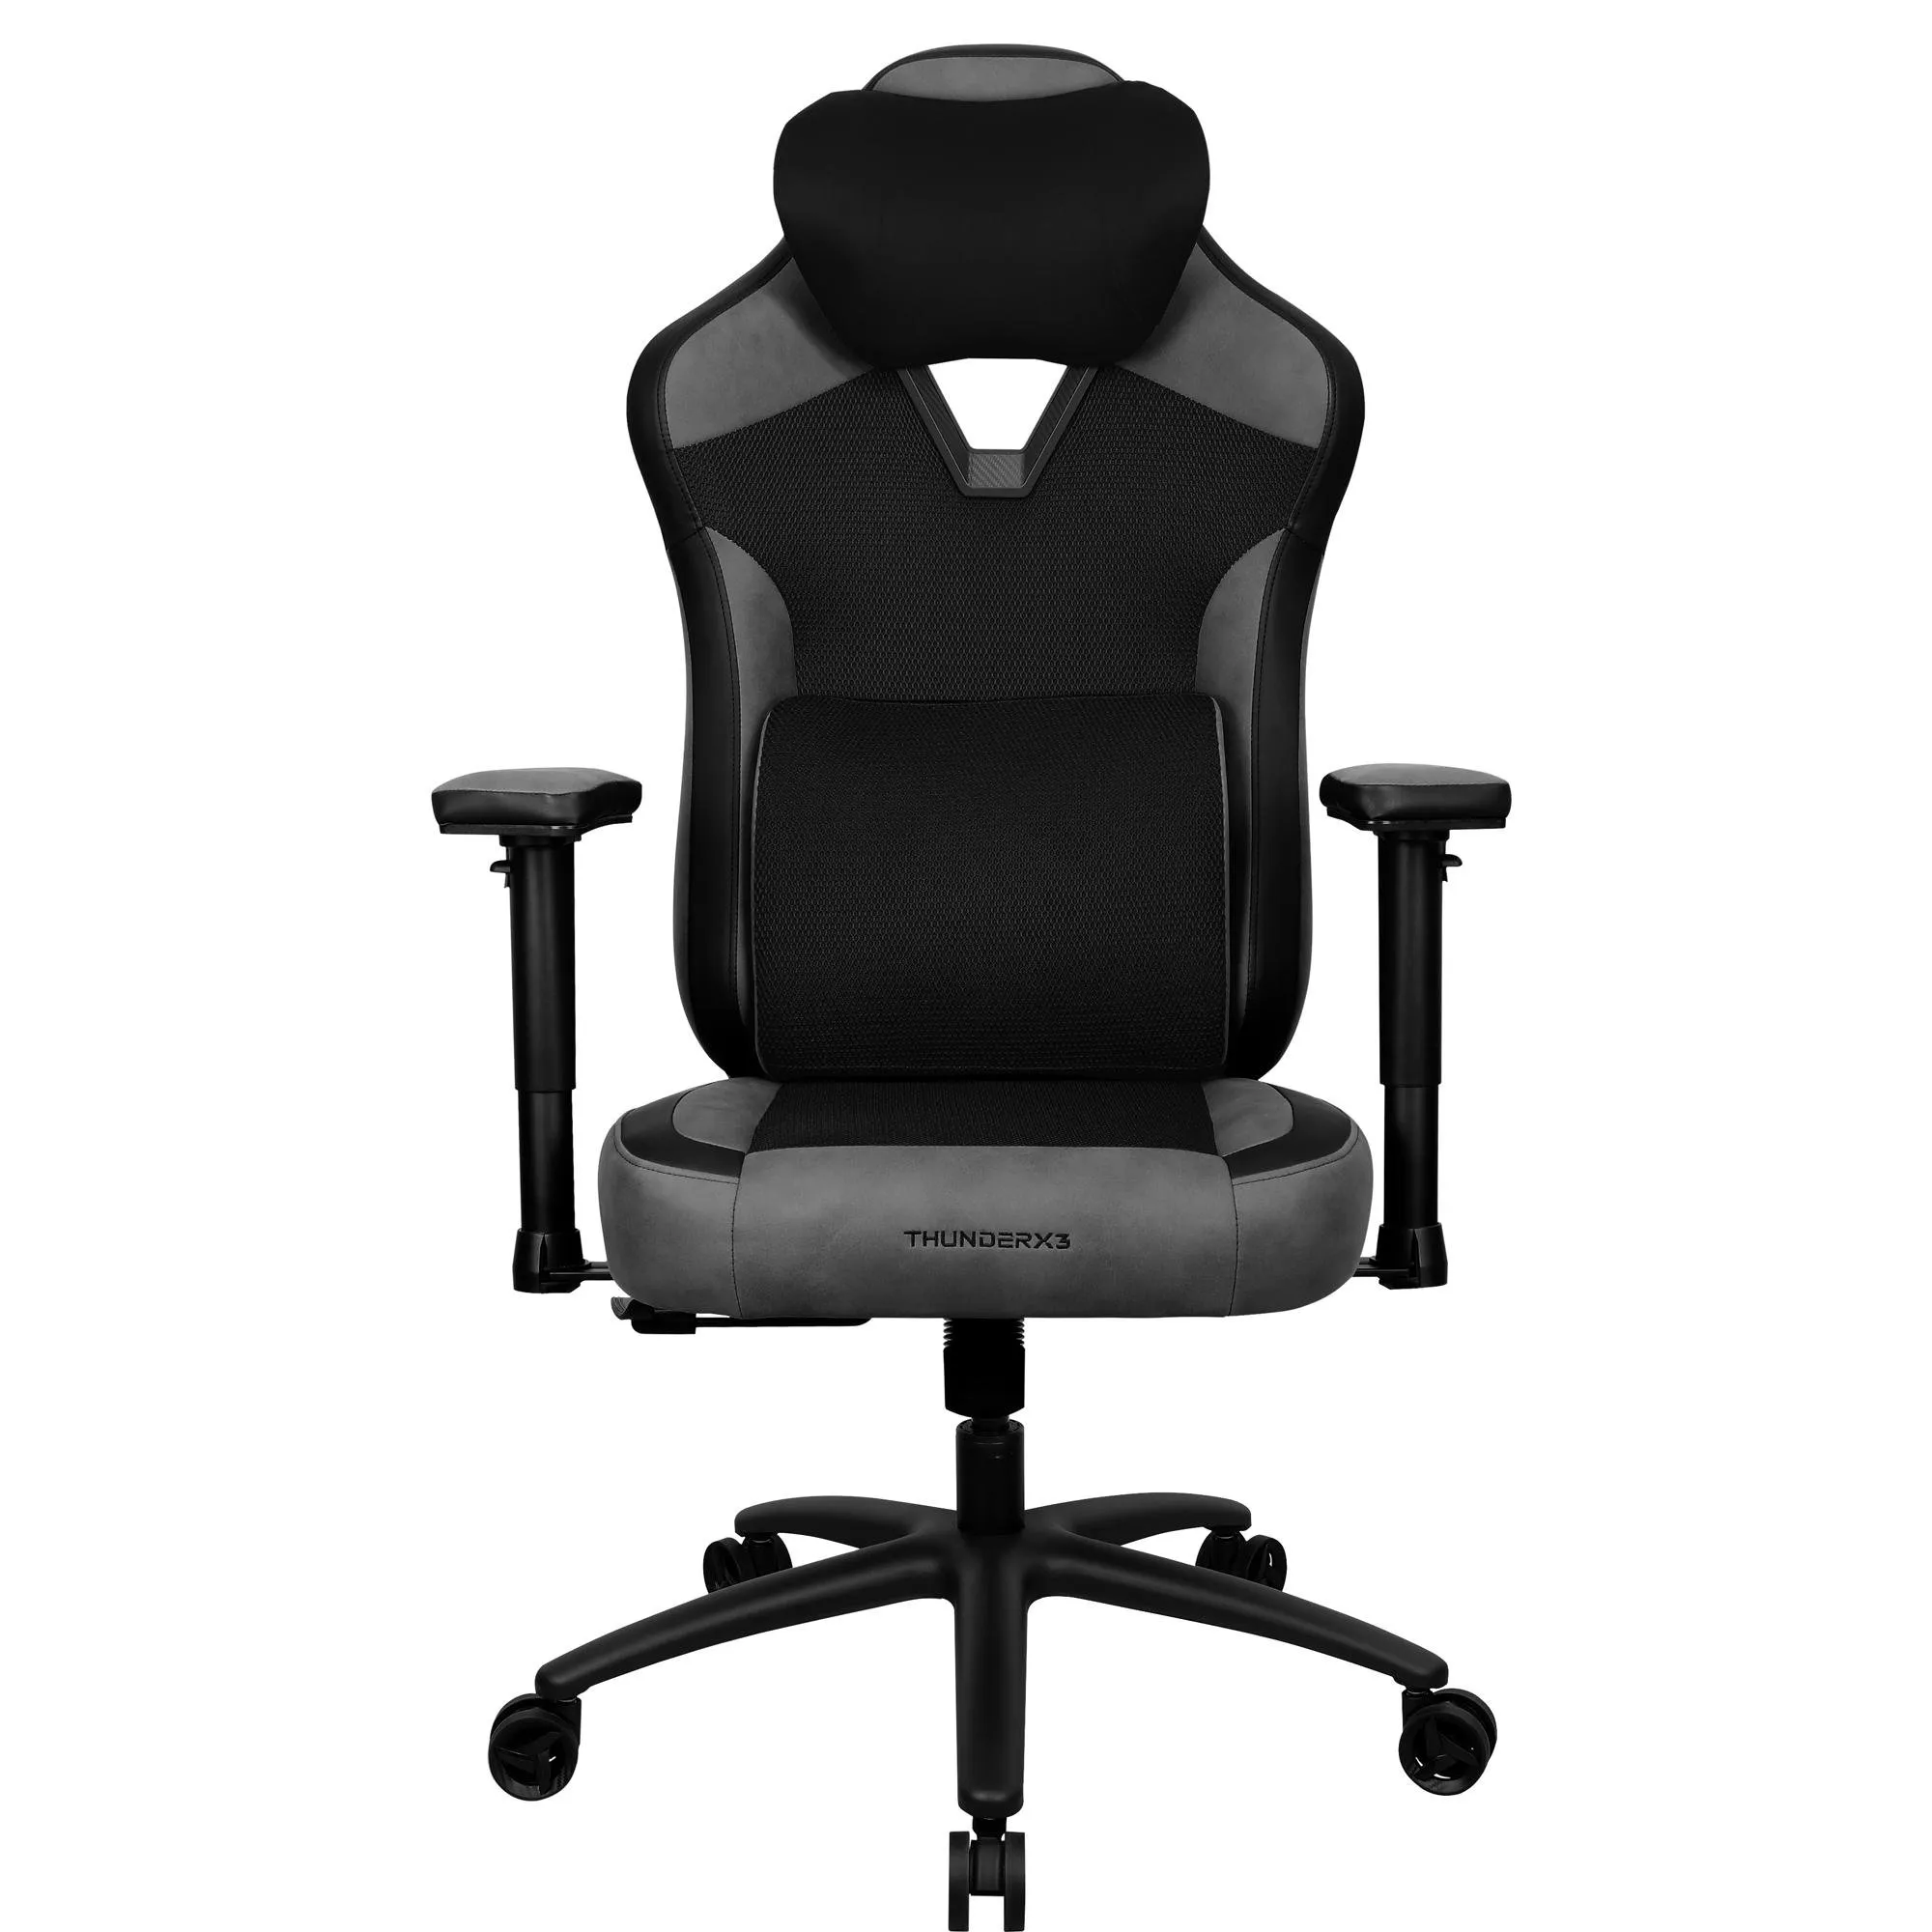 Cadeira ThunderX3 EAZE Mesh Black Preta por 1.599,90 à vista no boleto/pix ou parcele em até 12x sem juros. Compre na loja Thunderx3!